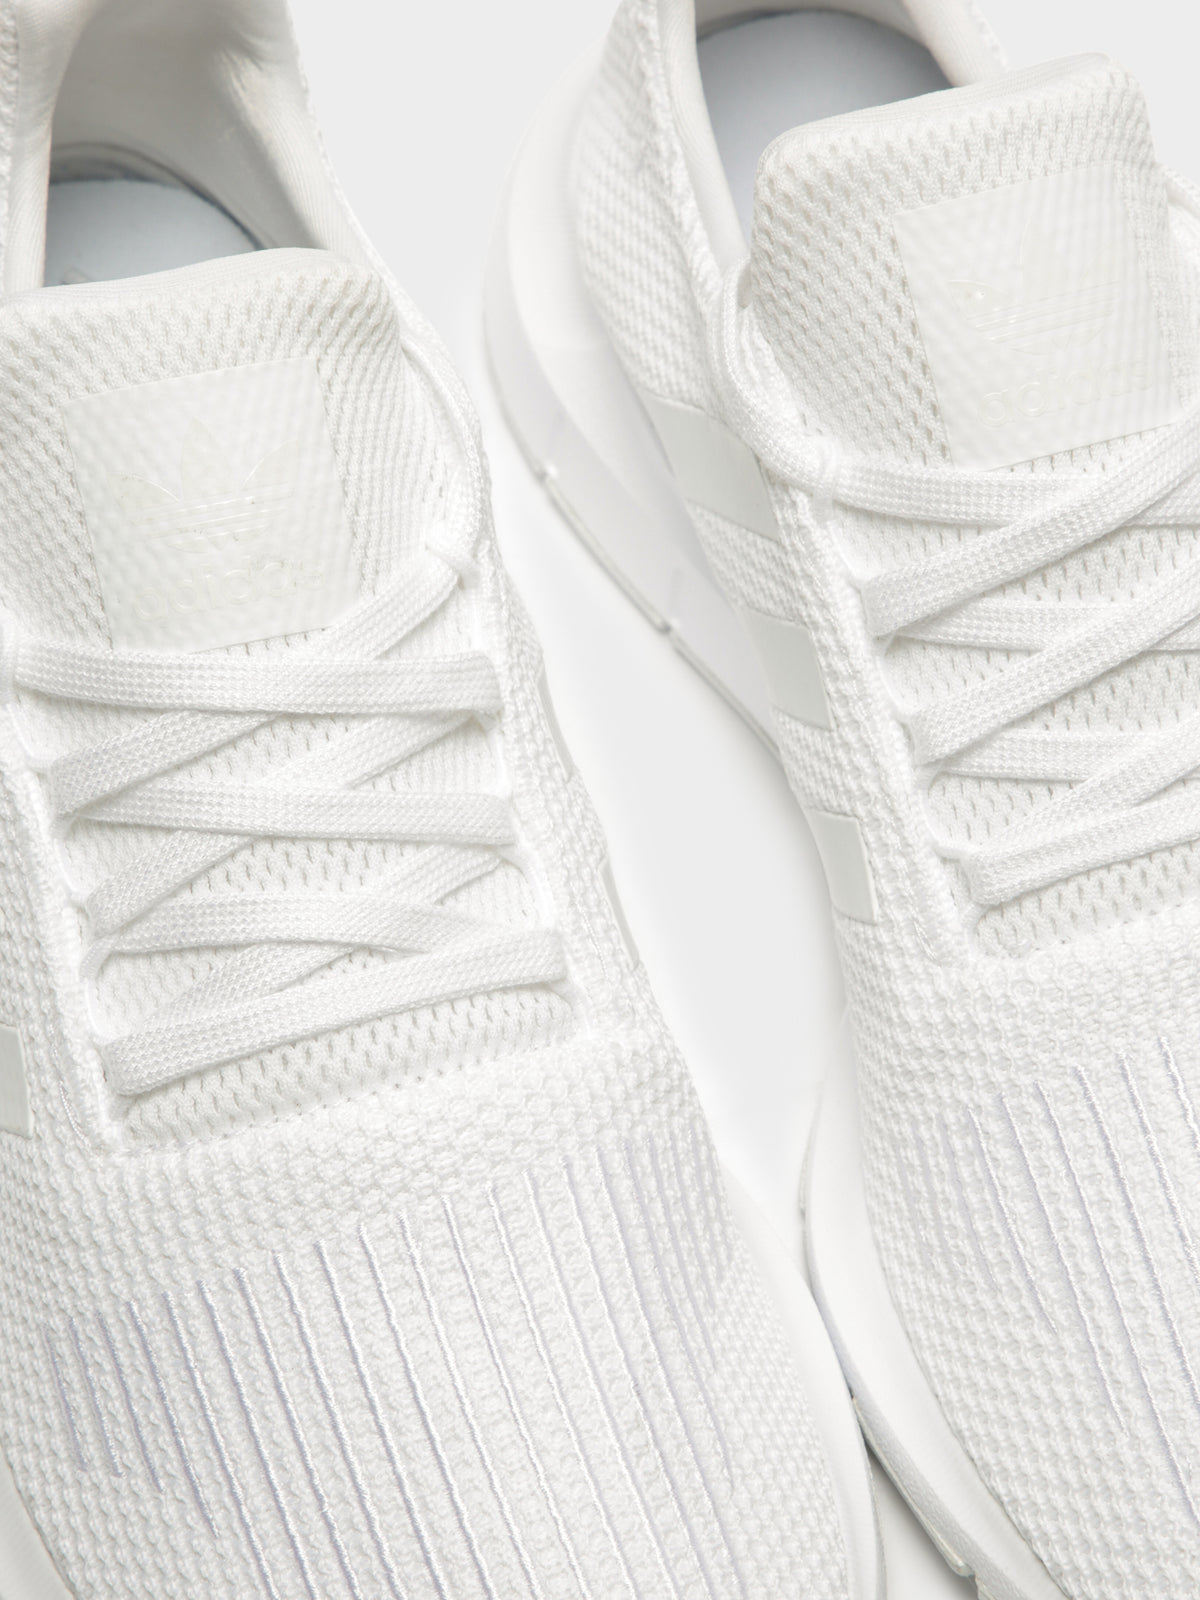 Unisex Swift Run Sneakers in White